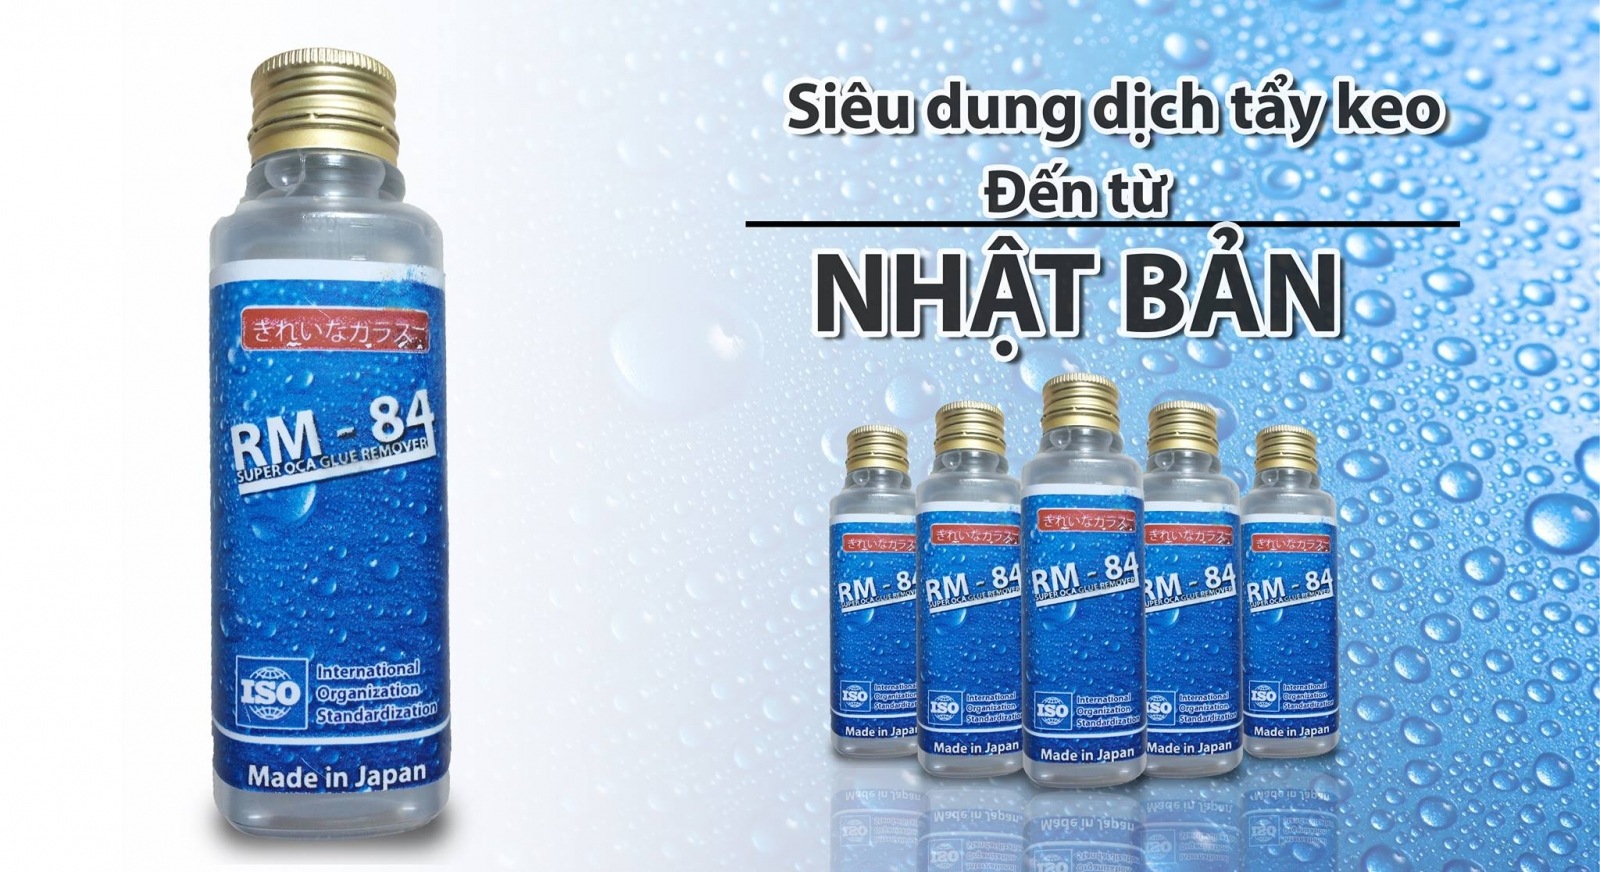 Nước tẩy keo RM-84 có công dụng ra sao?